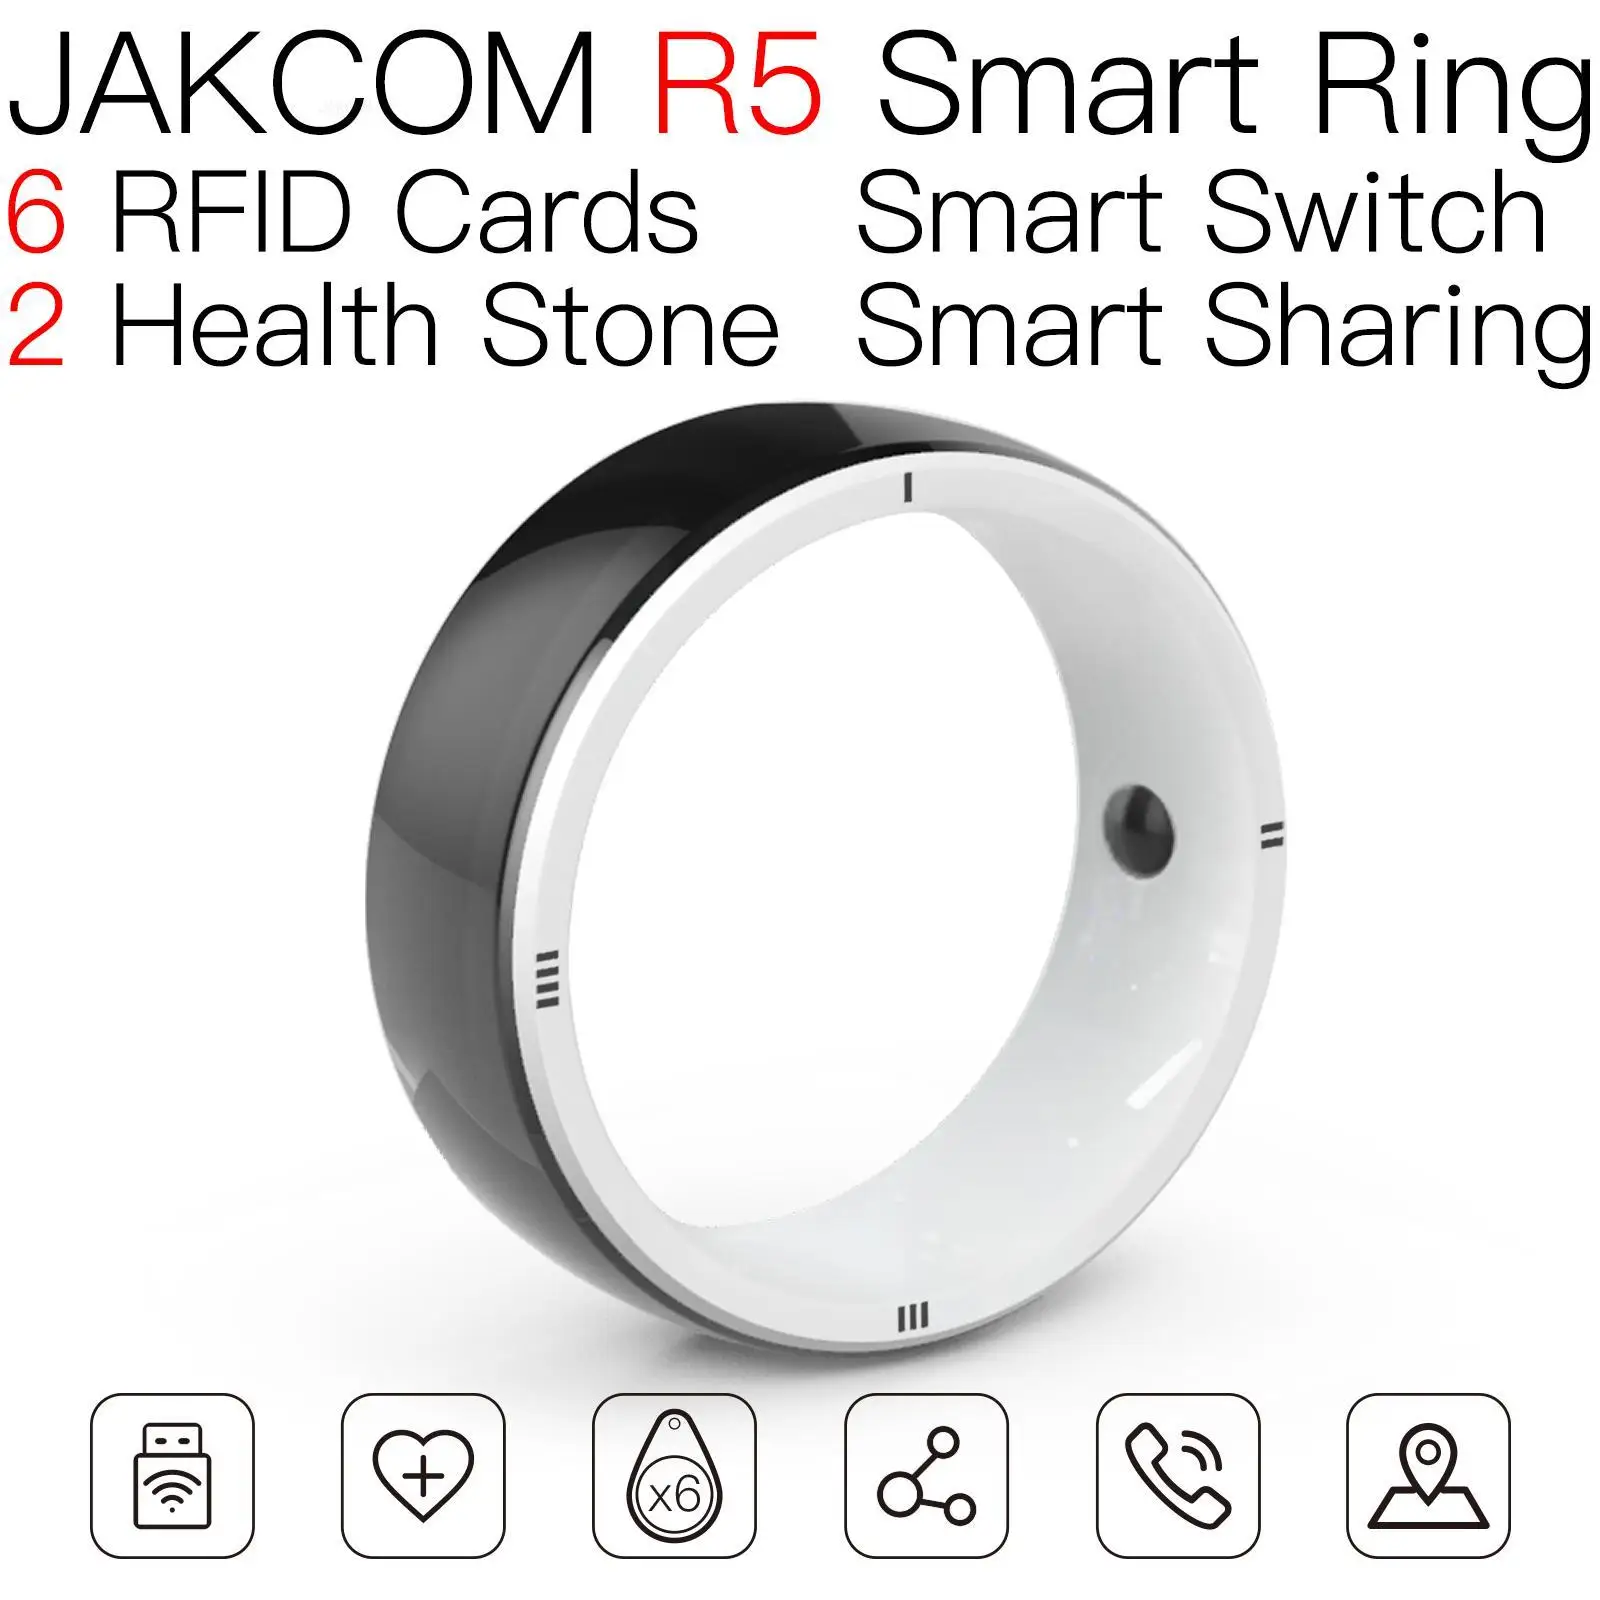 Умное кольцо JAKCOM R5 по суперценности в качестве солнечных часов для мужчин с бесплатной доставкой, накладные kw66 5 полос k50 примечание